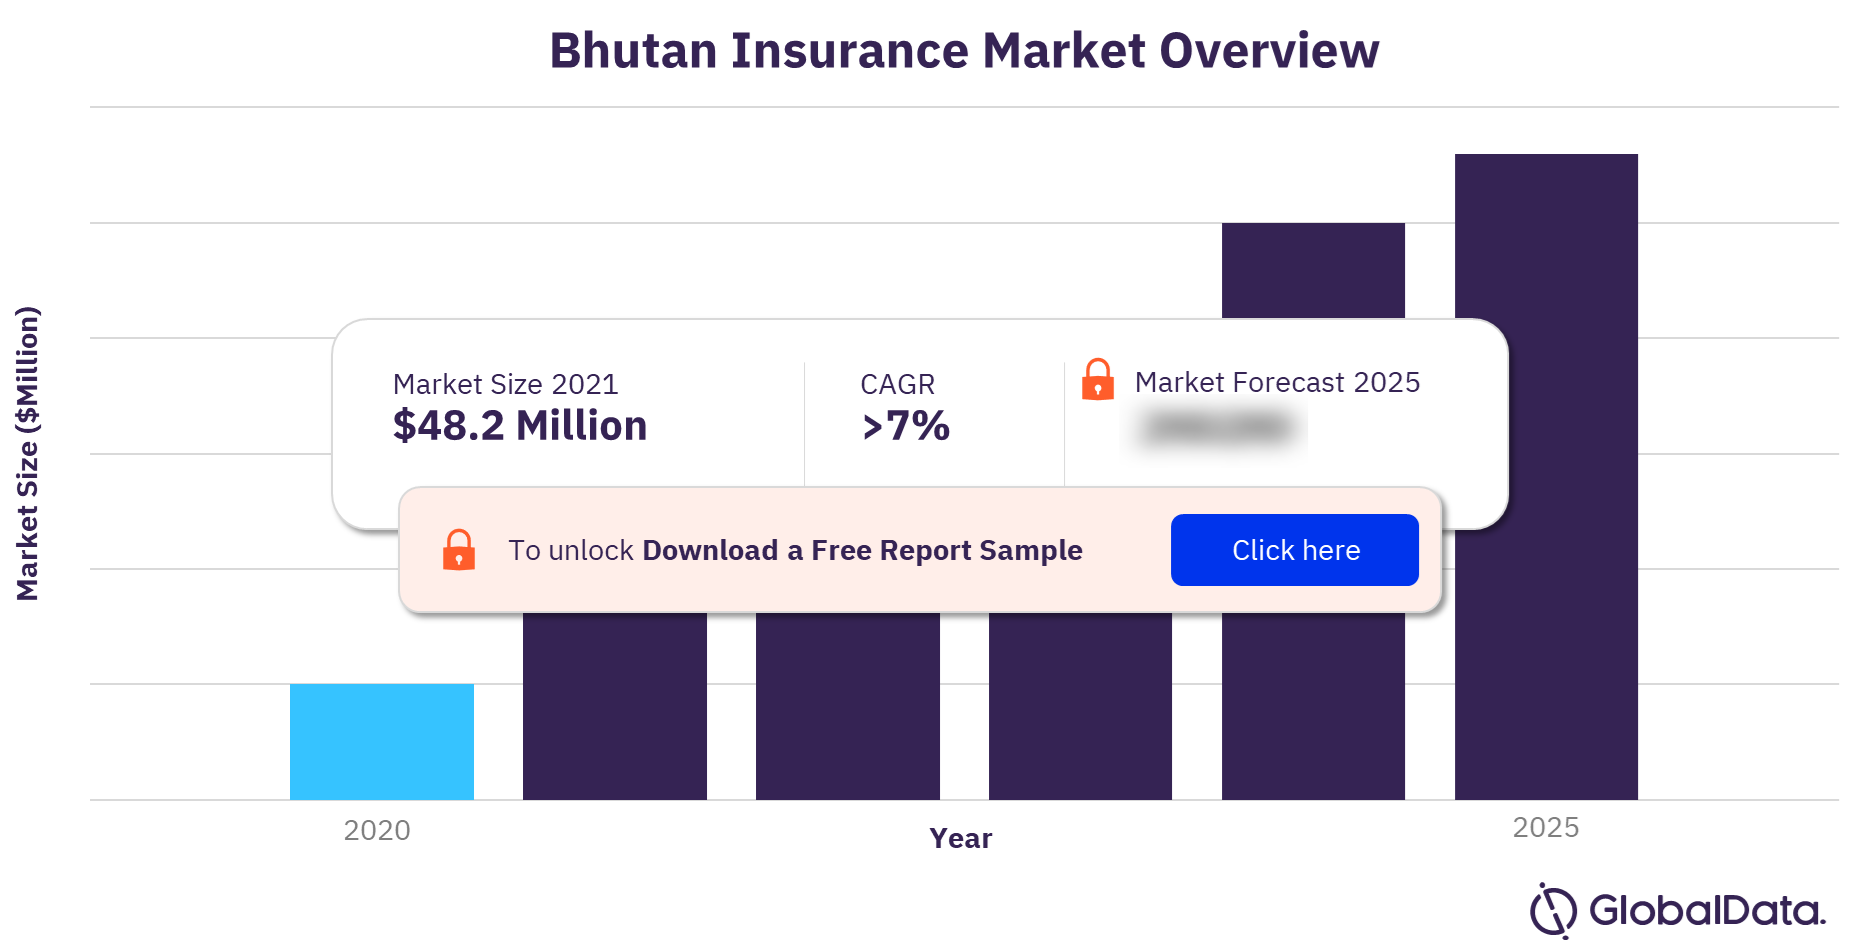 Bhutan insurance market overview